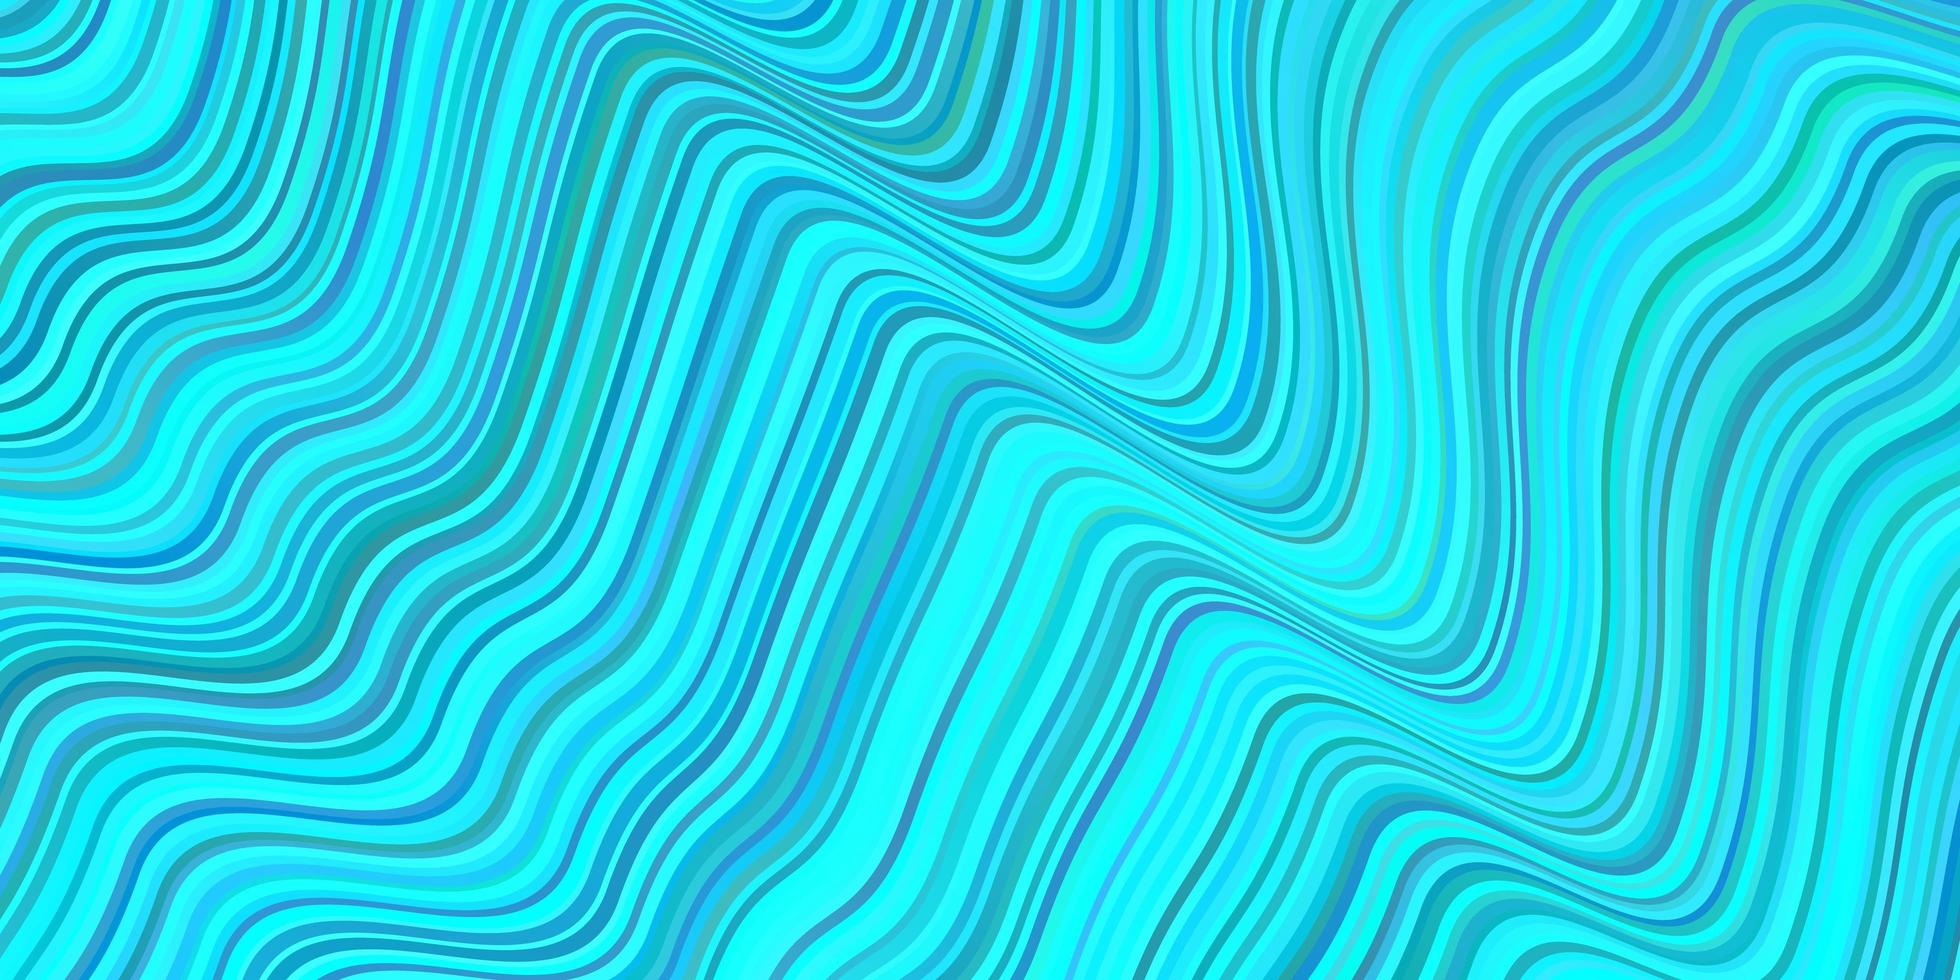 sfondo vettoriale azzurro con linee.